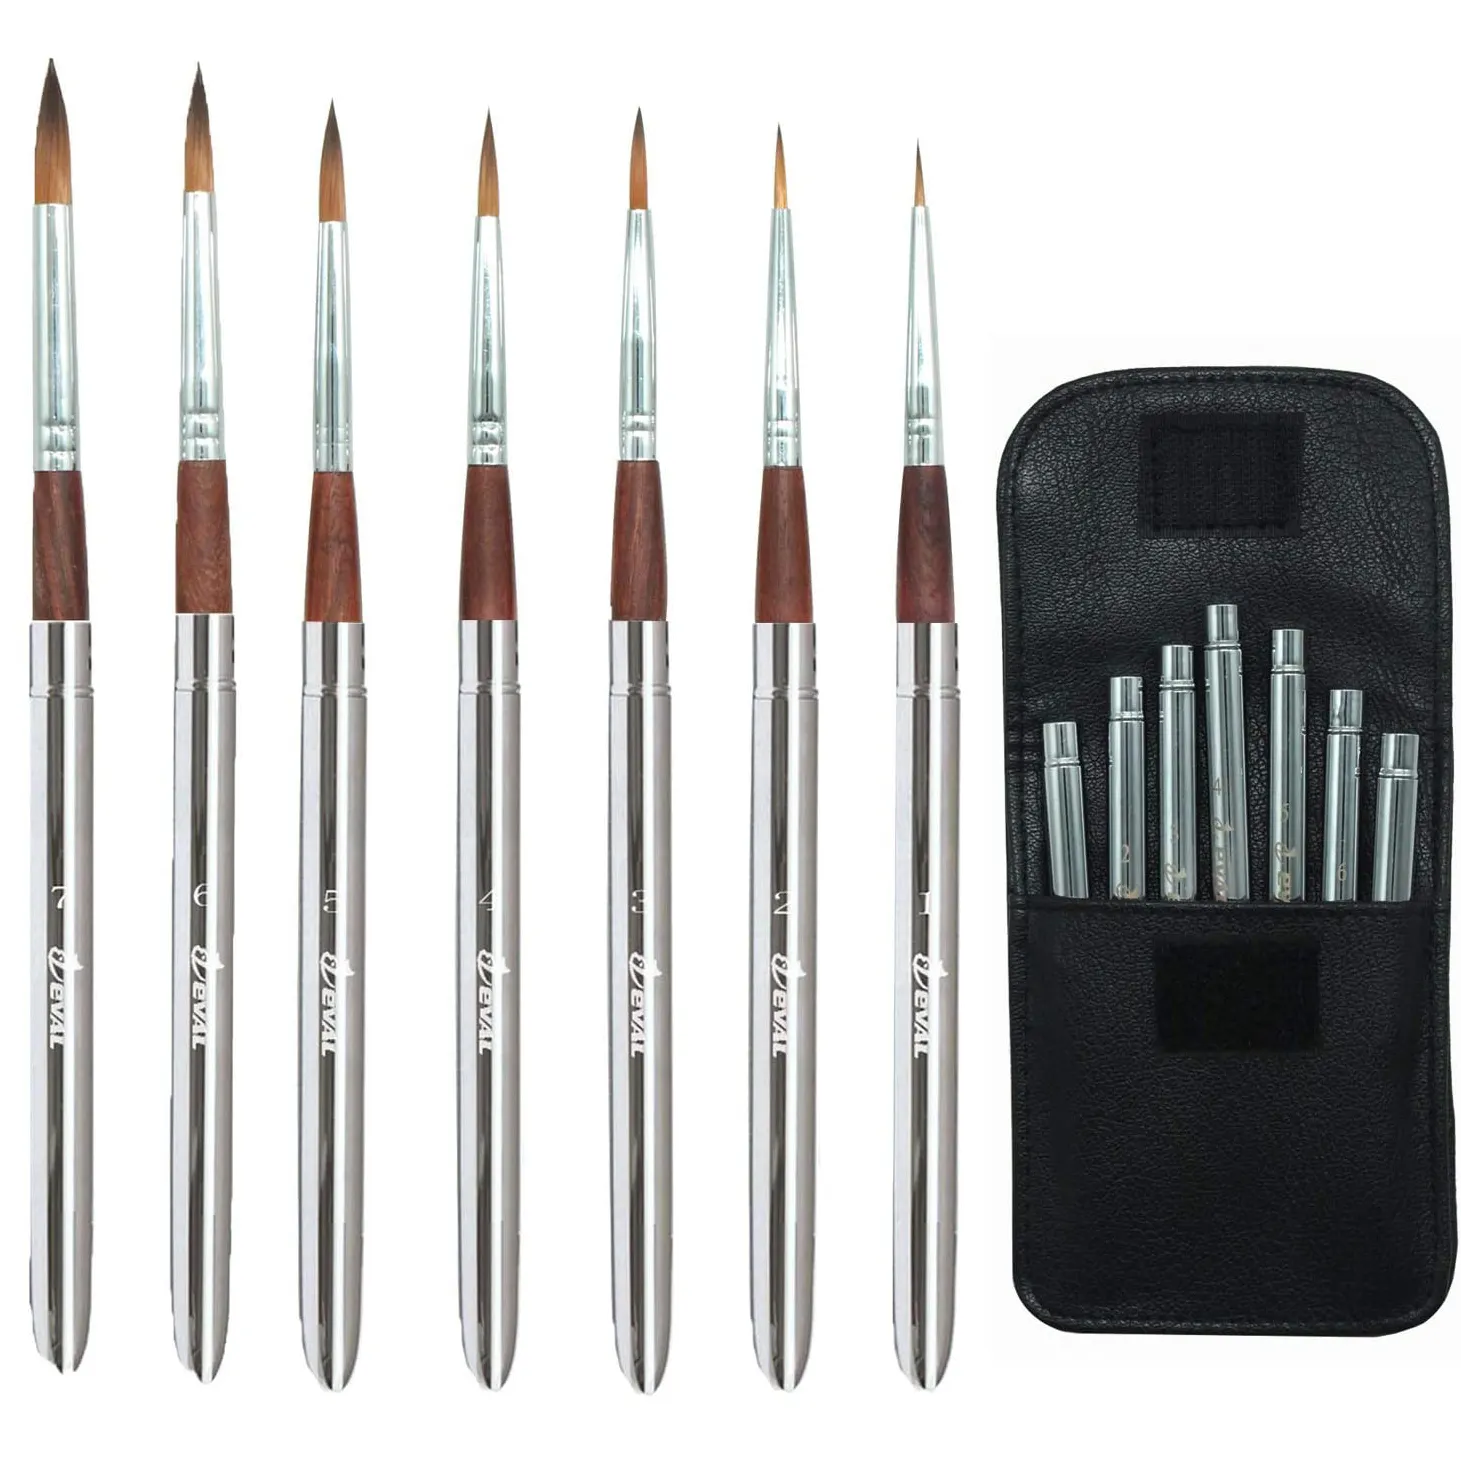 EVAL New Design Paint Brush Set - Deluxe Travel Paintbrush Set Oil Brush Nylon for Watercolour Artists Handmade Metal